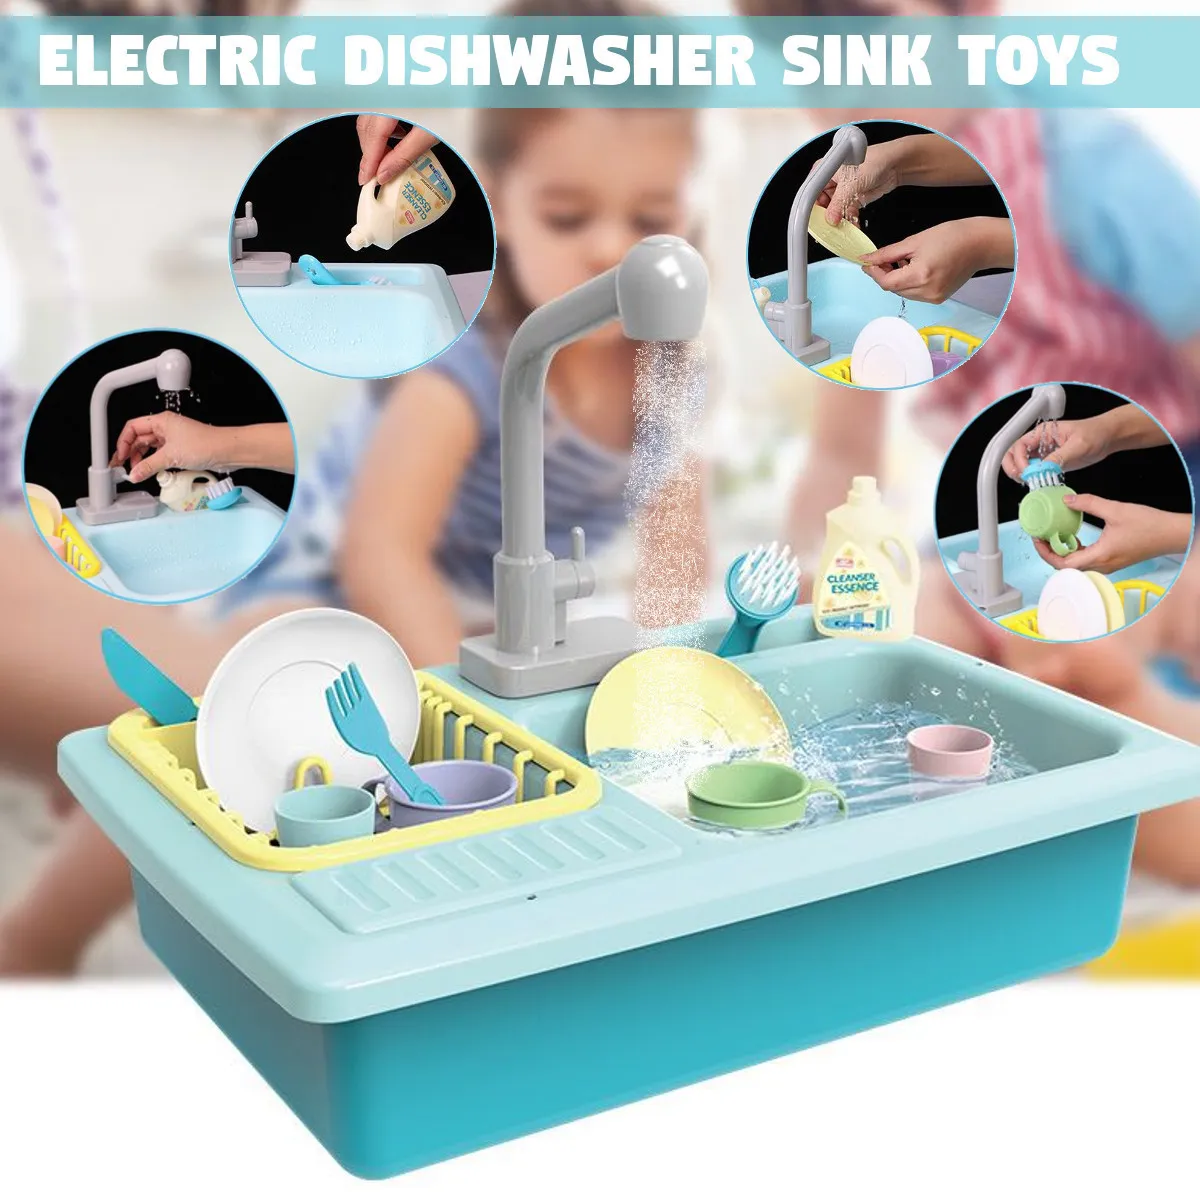 Kinder Neue Plastiksimulation Elektrische Spülmaschine Waschbecken vor, Spielen Küchenspielzeug Sets für Kinder Mädchen Geburtstag Weihnachtsgeschenke LJ2331976